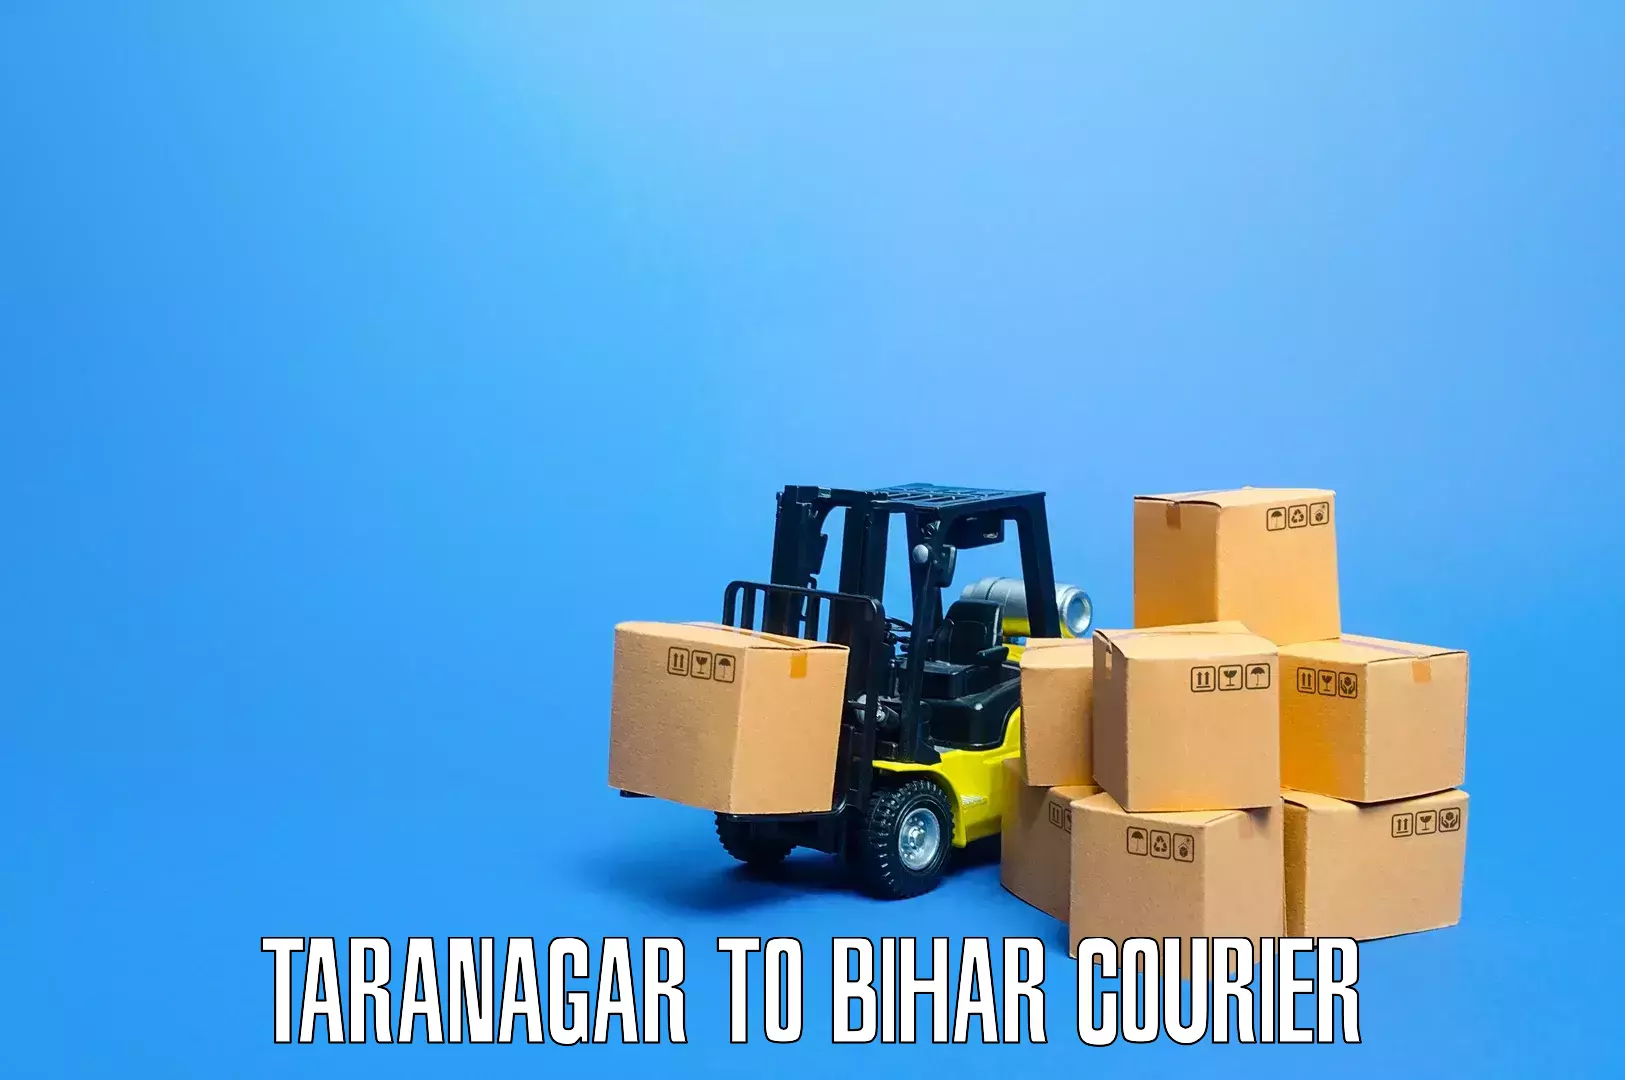 Household moving experts Taranagar to Sheikhpura